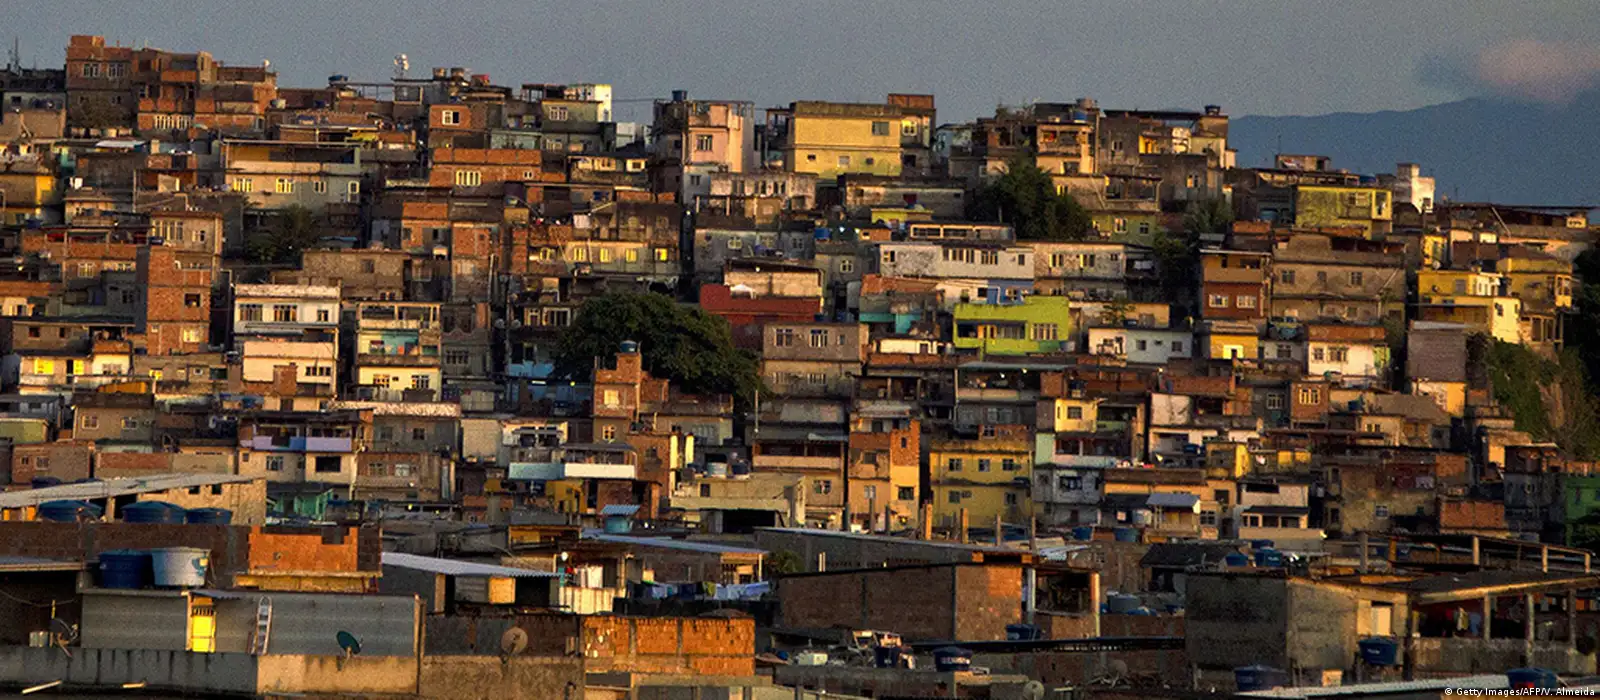 Canoa havaiana: projeto transforma a vida de jovens de favelas